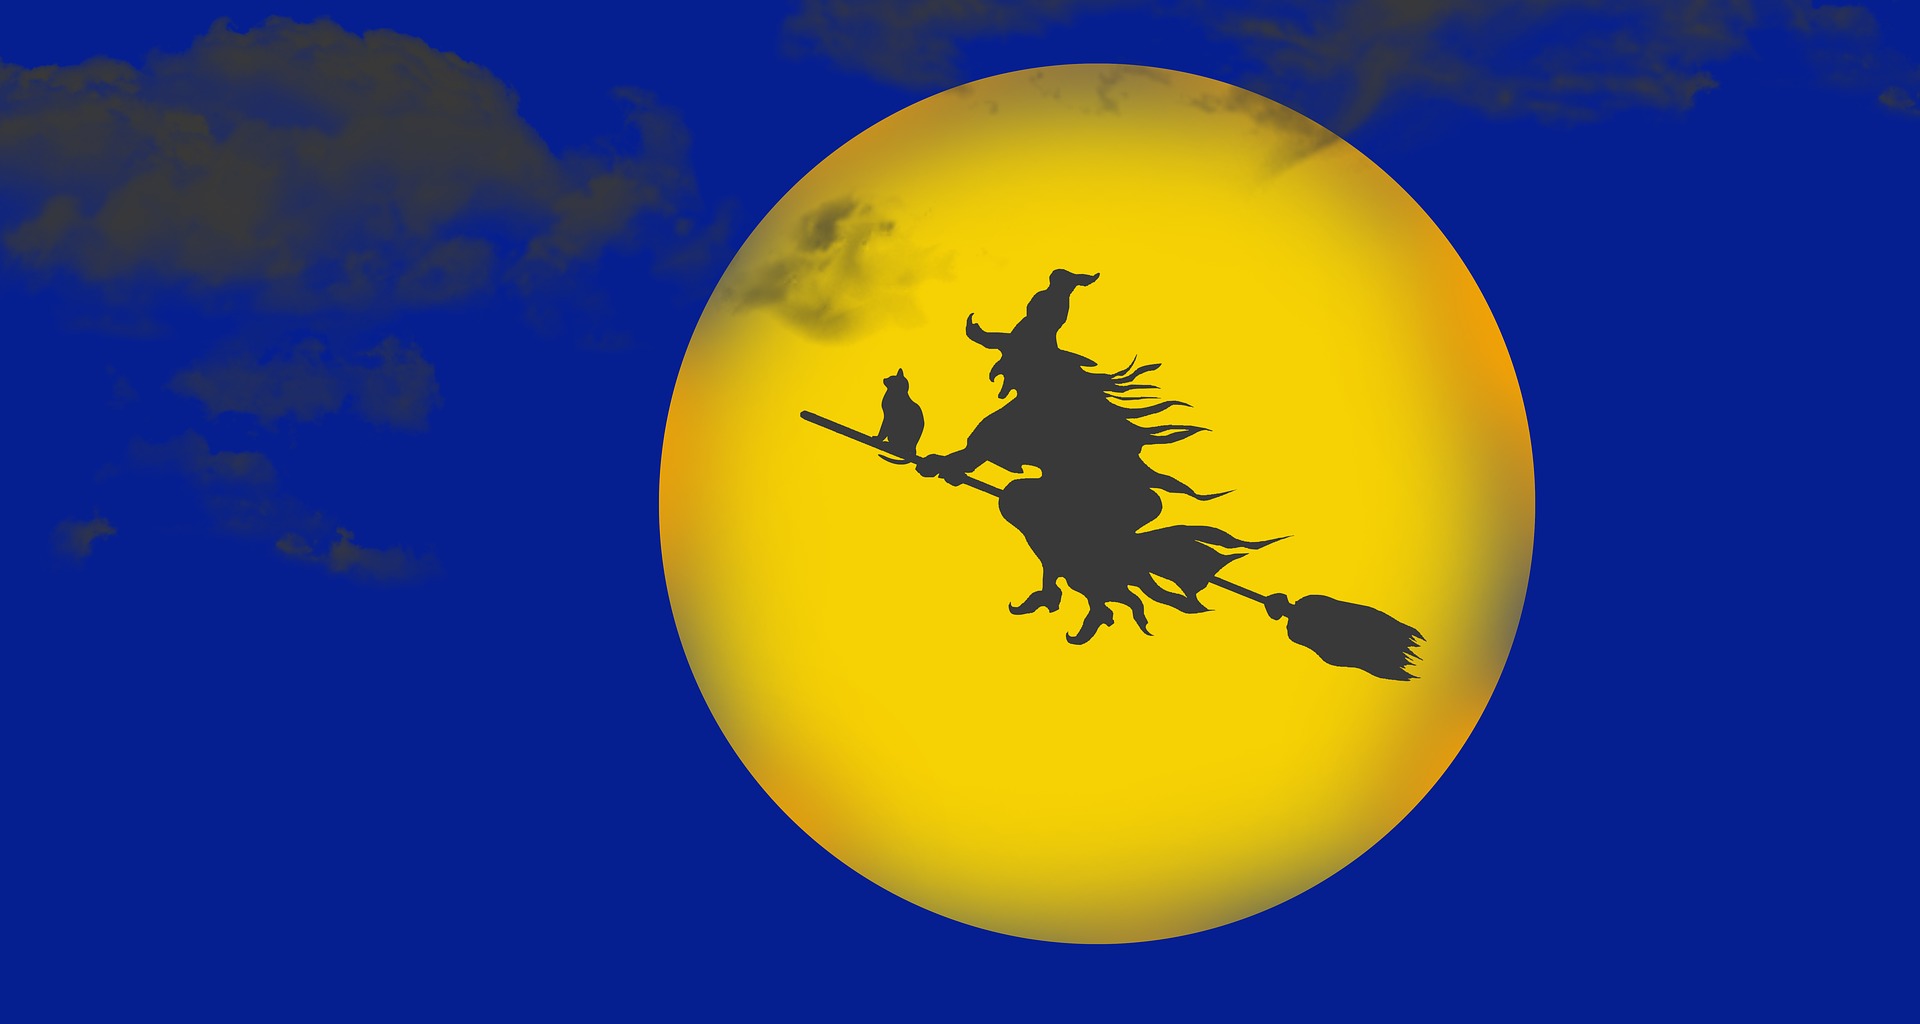 Скачать обои бесплатно Луна, Хэллоуин, Ведьма, Праздничные картинка на рабочий стол ПК